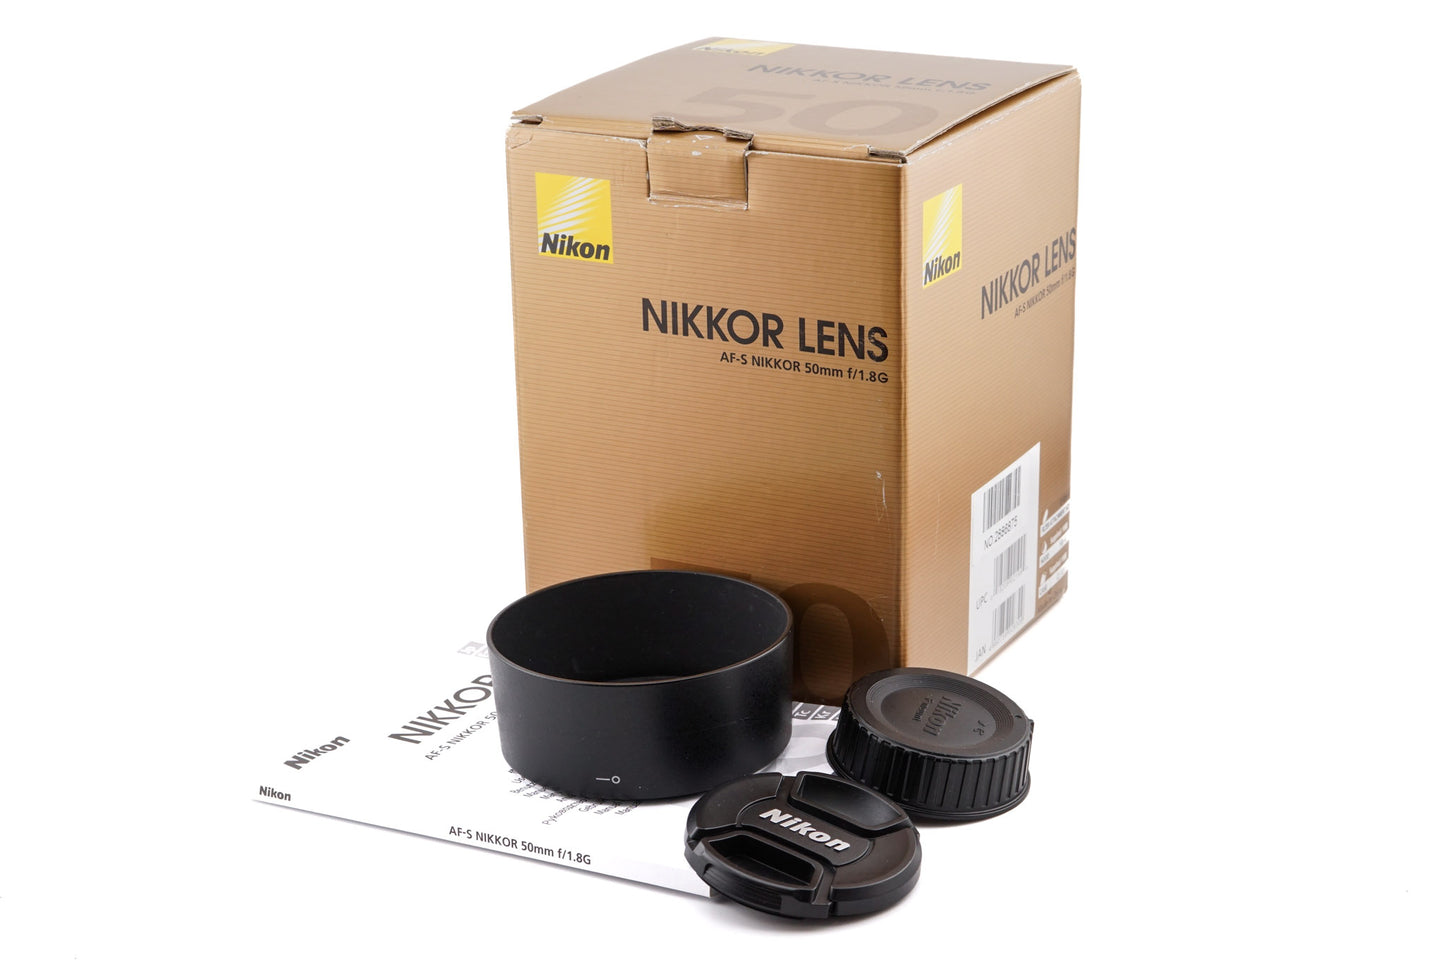 Nikon 50mm f1.8 AF-S Nikkor G